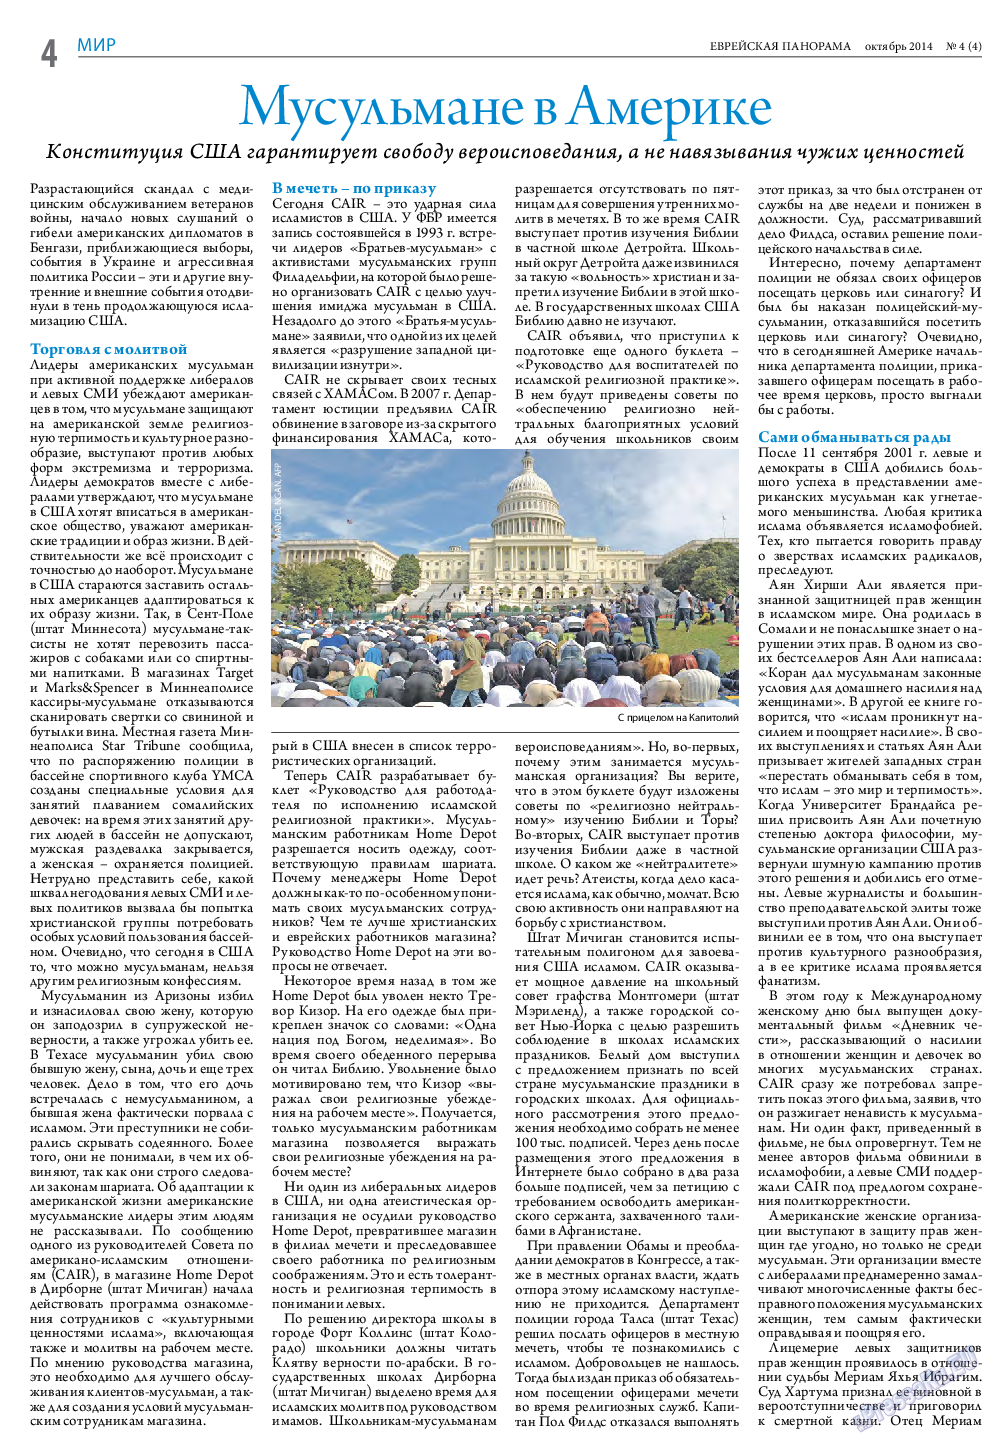 Еврейская панорама (газета). 2014 год, номер 4, стр. 4